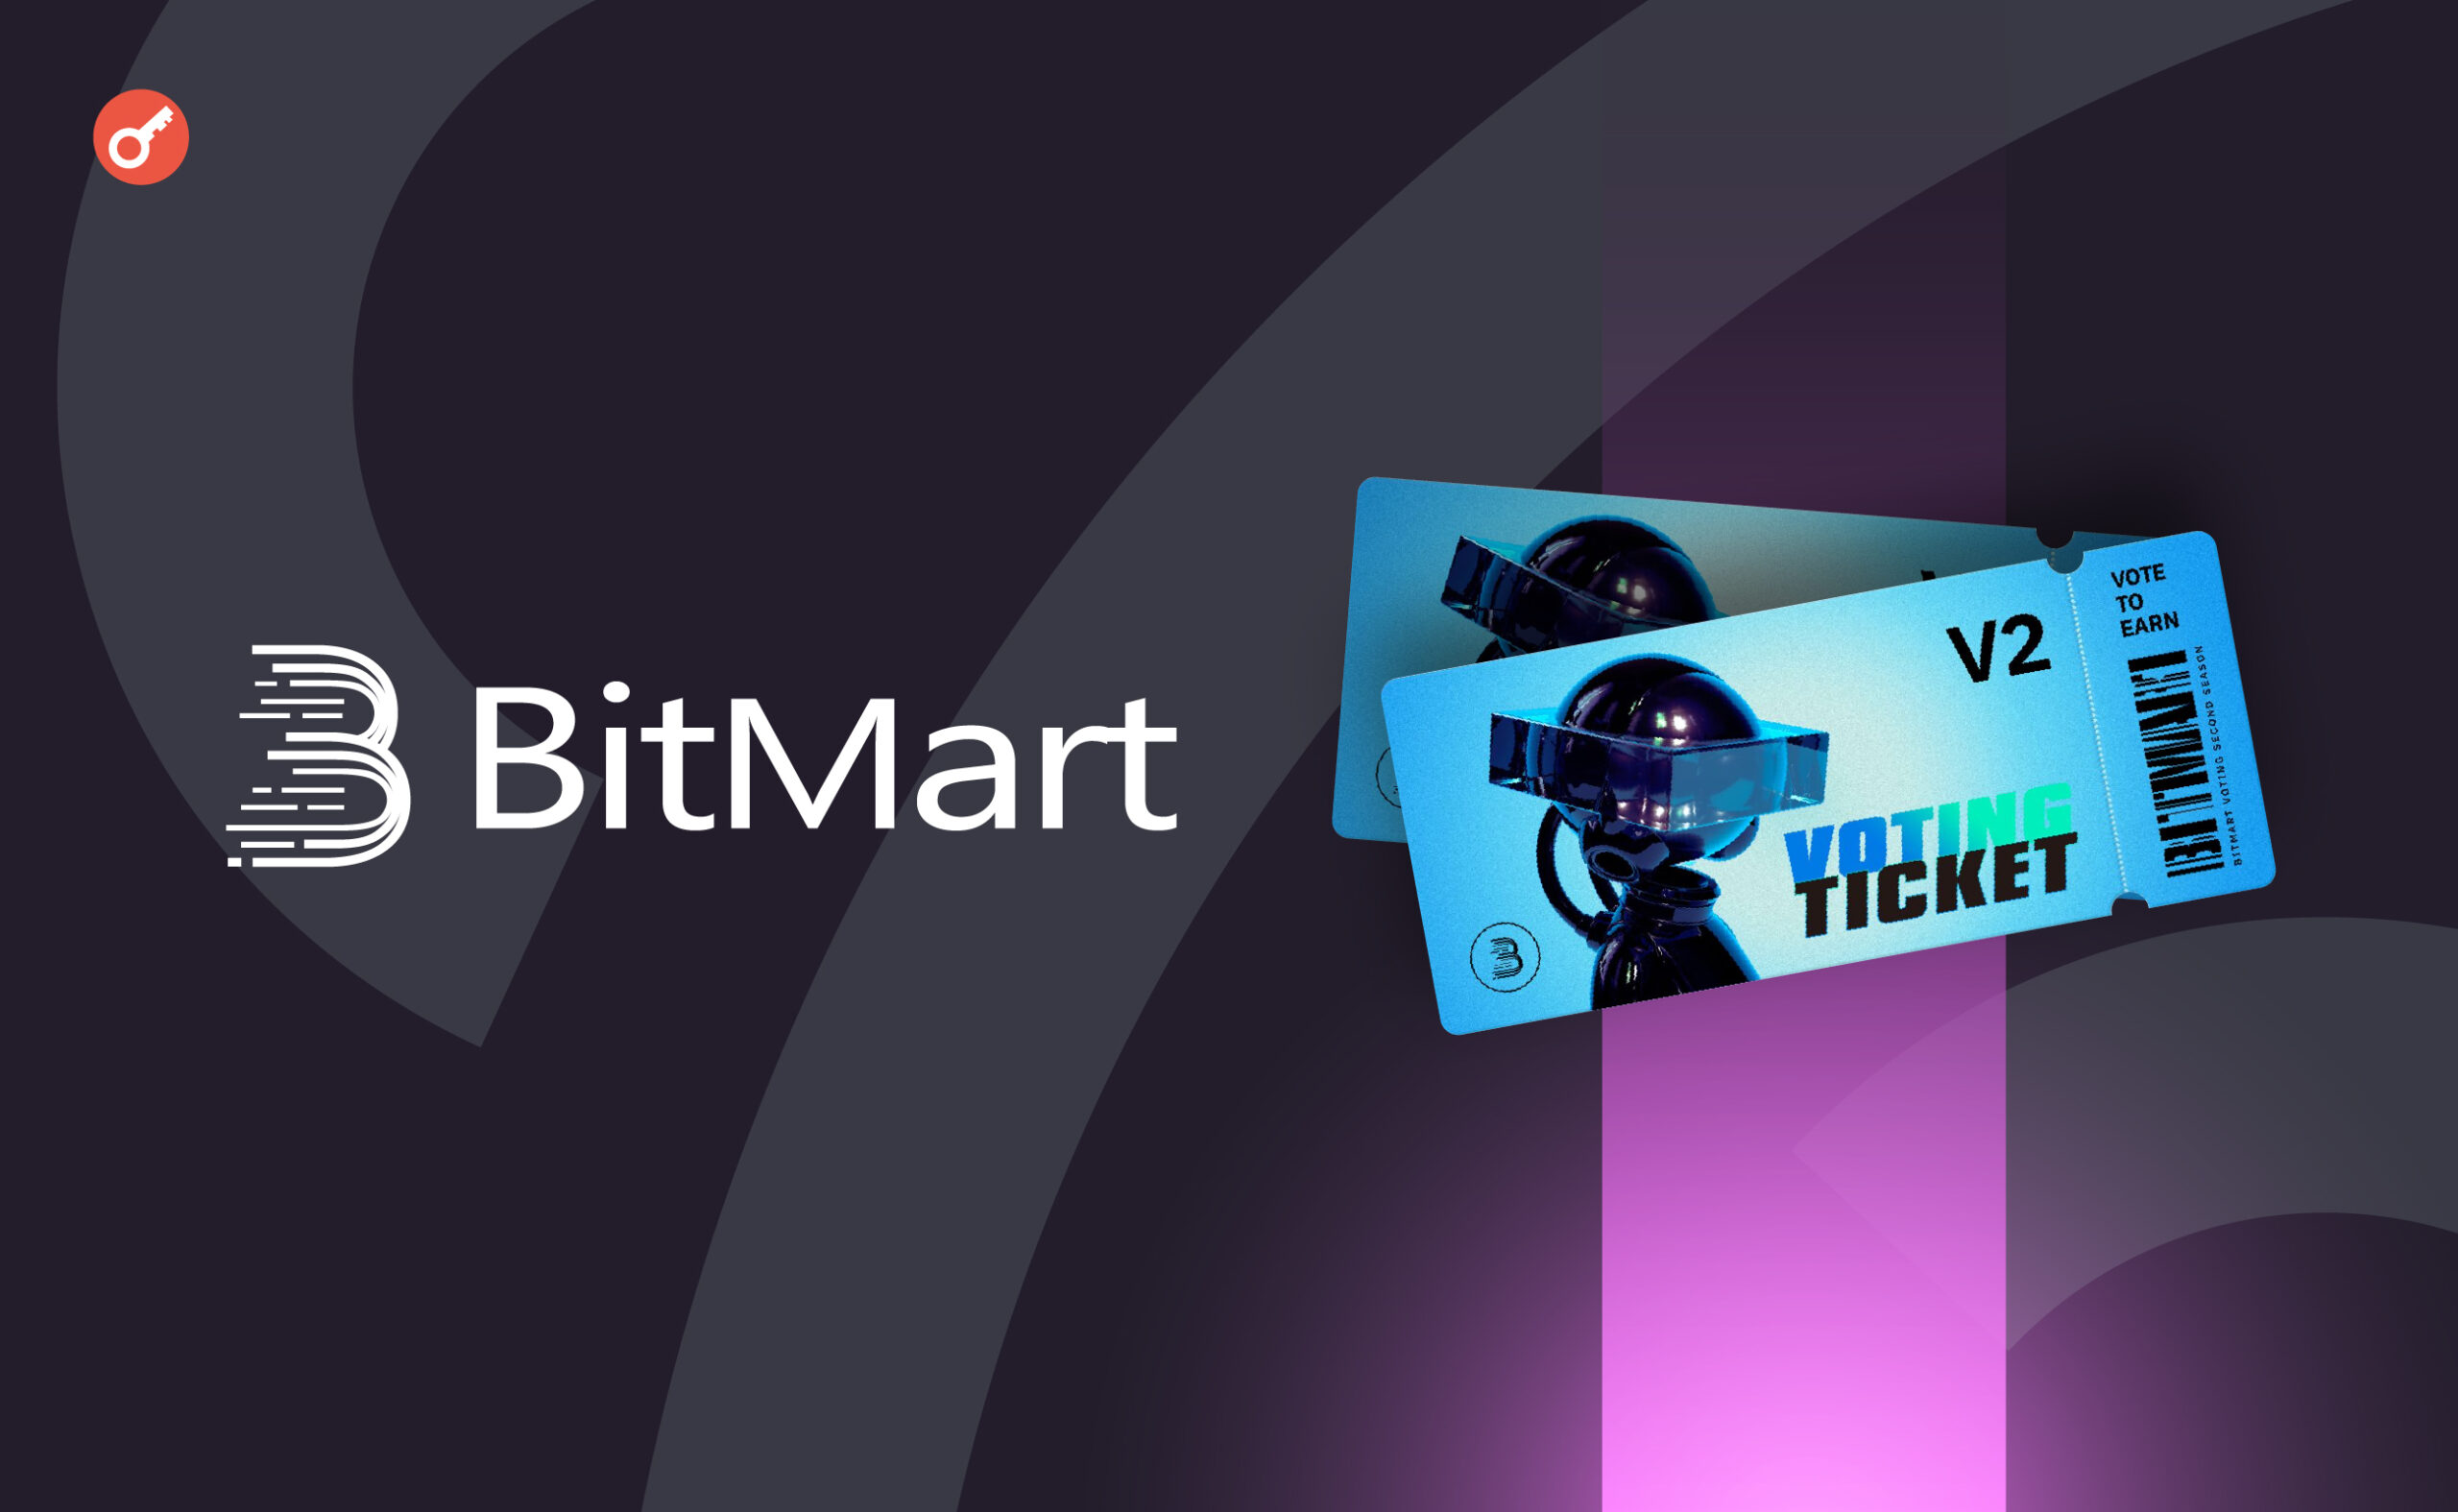 Біржа BitMart оголосила про запуск другого раунду проєкту Vote to Earn. Головний колаж новини.